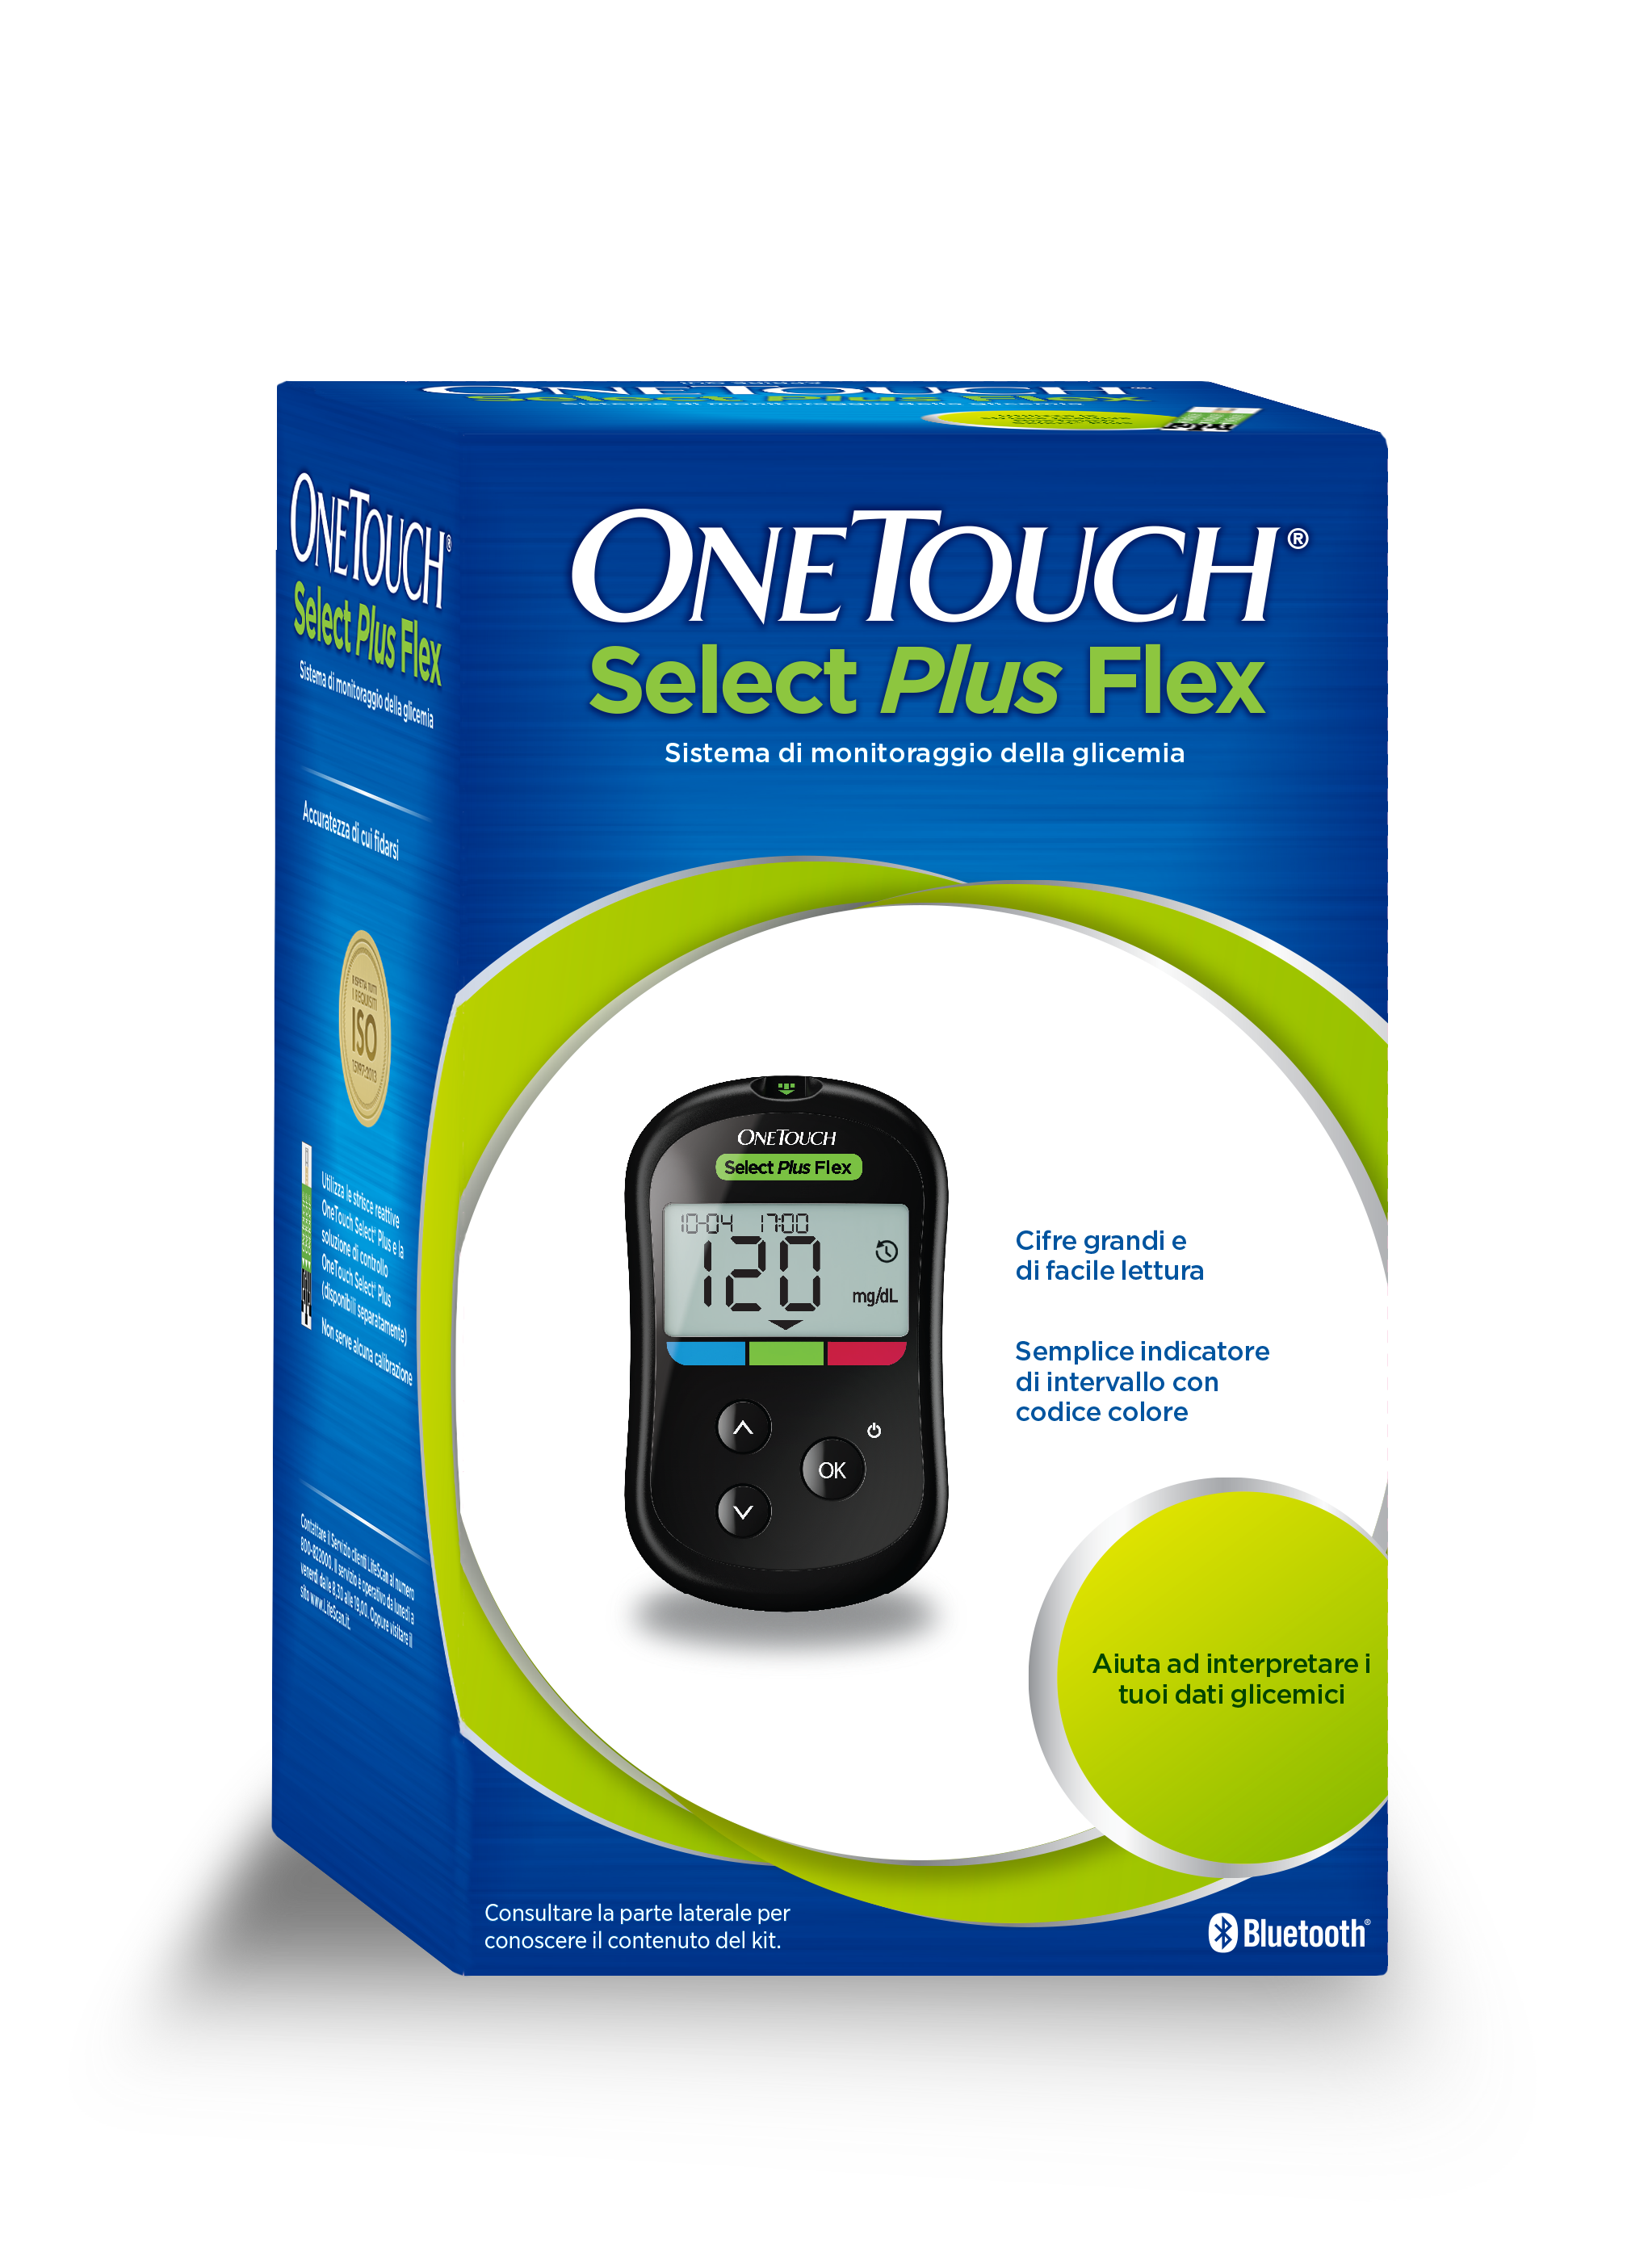 Il glucometro OneTouch Select Plus Flex® rende semplice comprendere il significato dei risultati glicemici